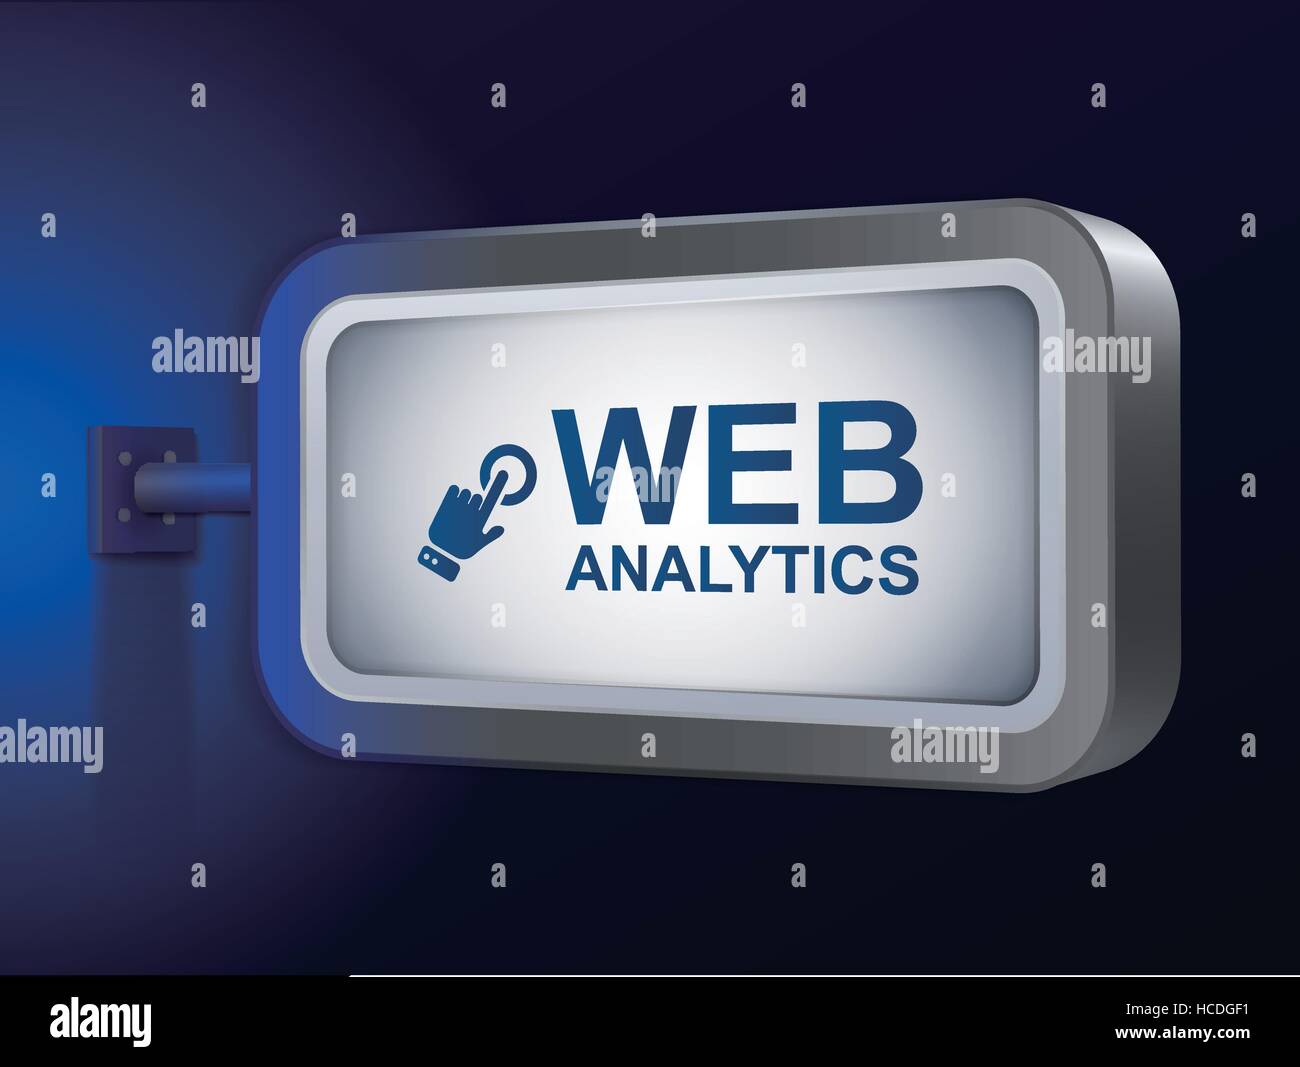 Web Analytics mots sur billboard sur fond bleu Illustration de Vecteur